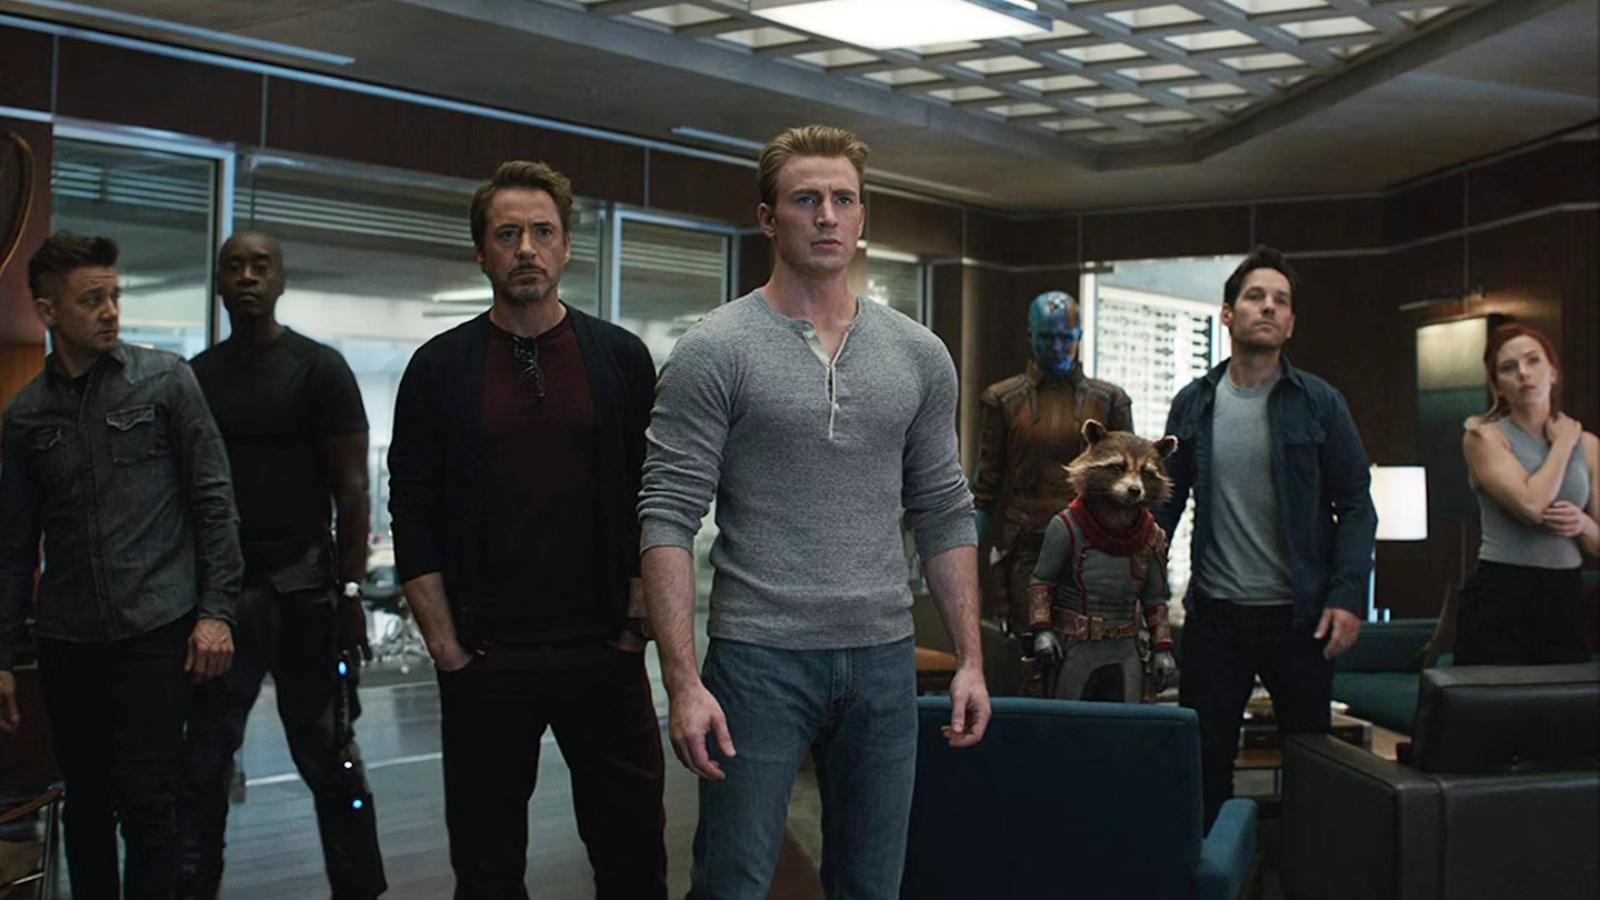 The cast of Avengers Endgame